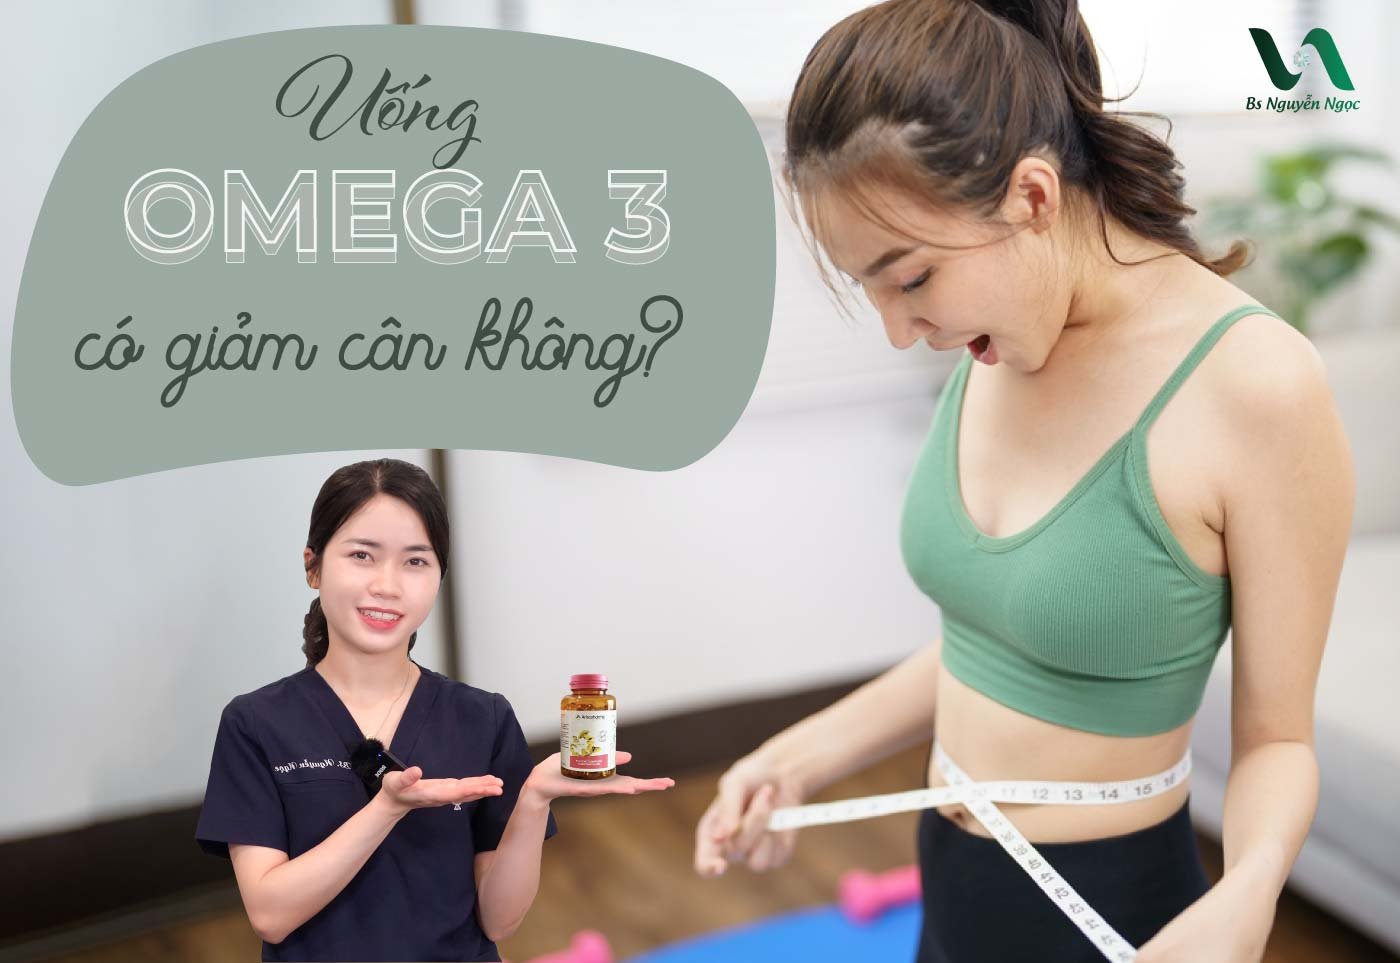 Uống omega 3 có giảm cân không?